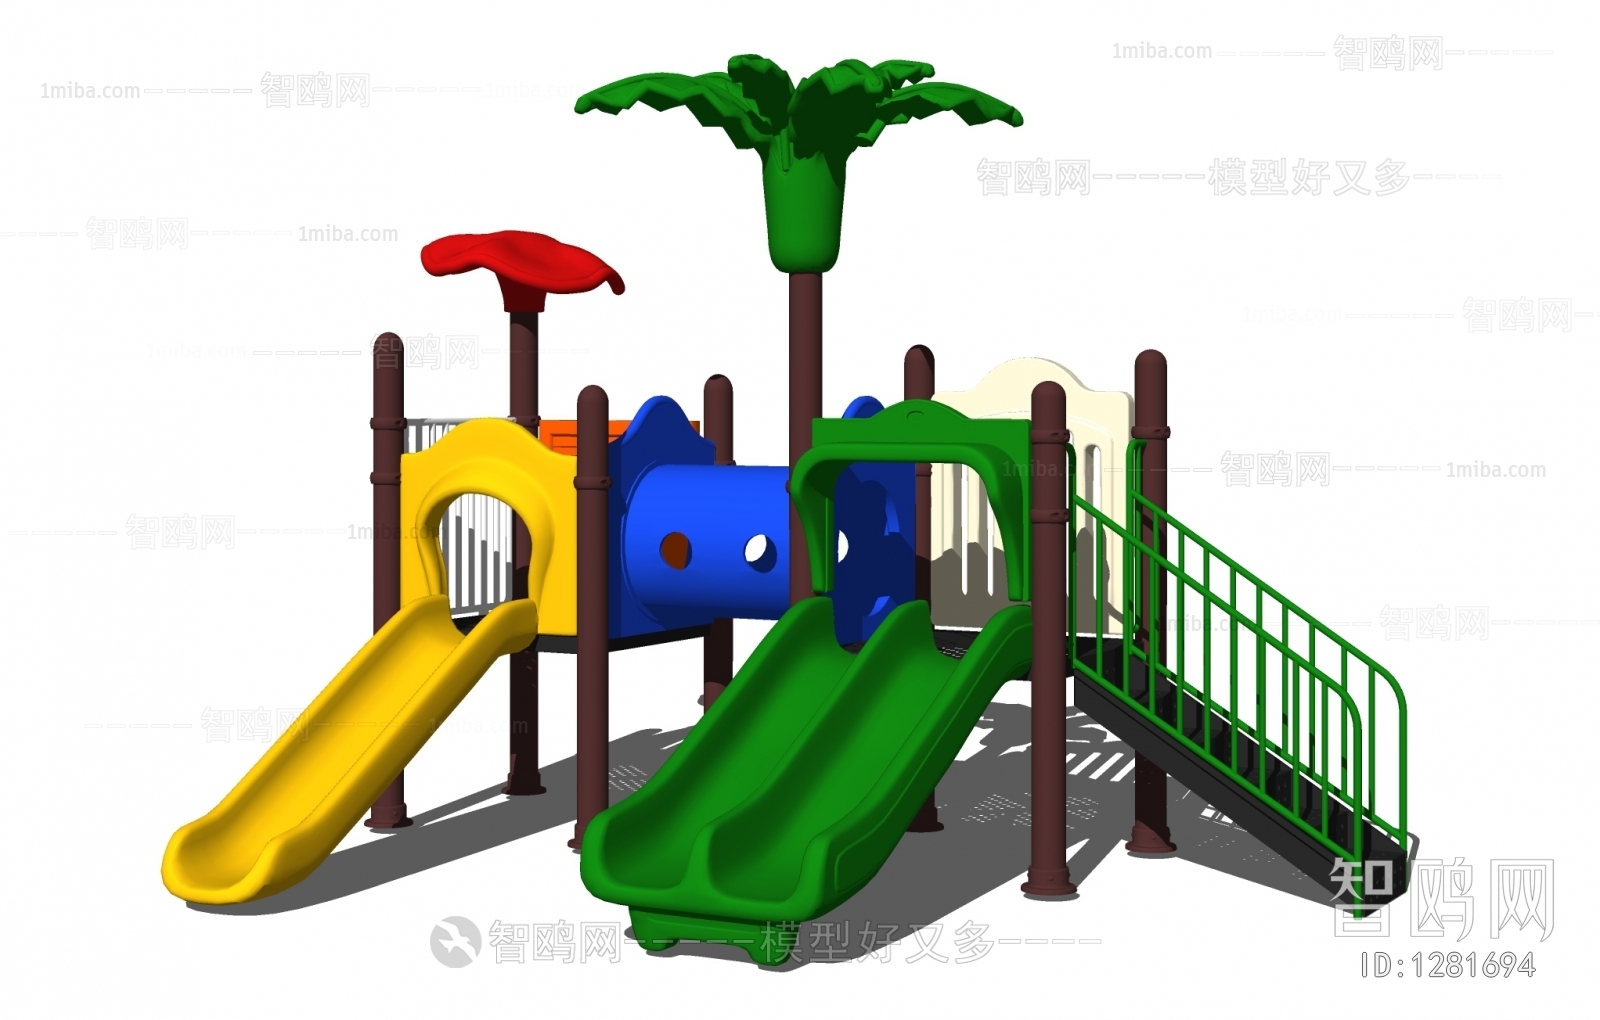 现代儿童滑梯 塑料滑梯 娱乐器材设备 游乐设施